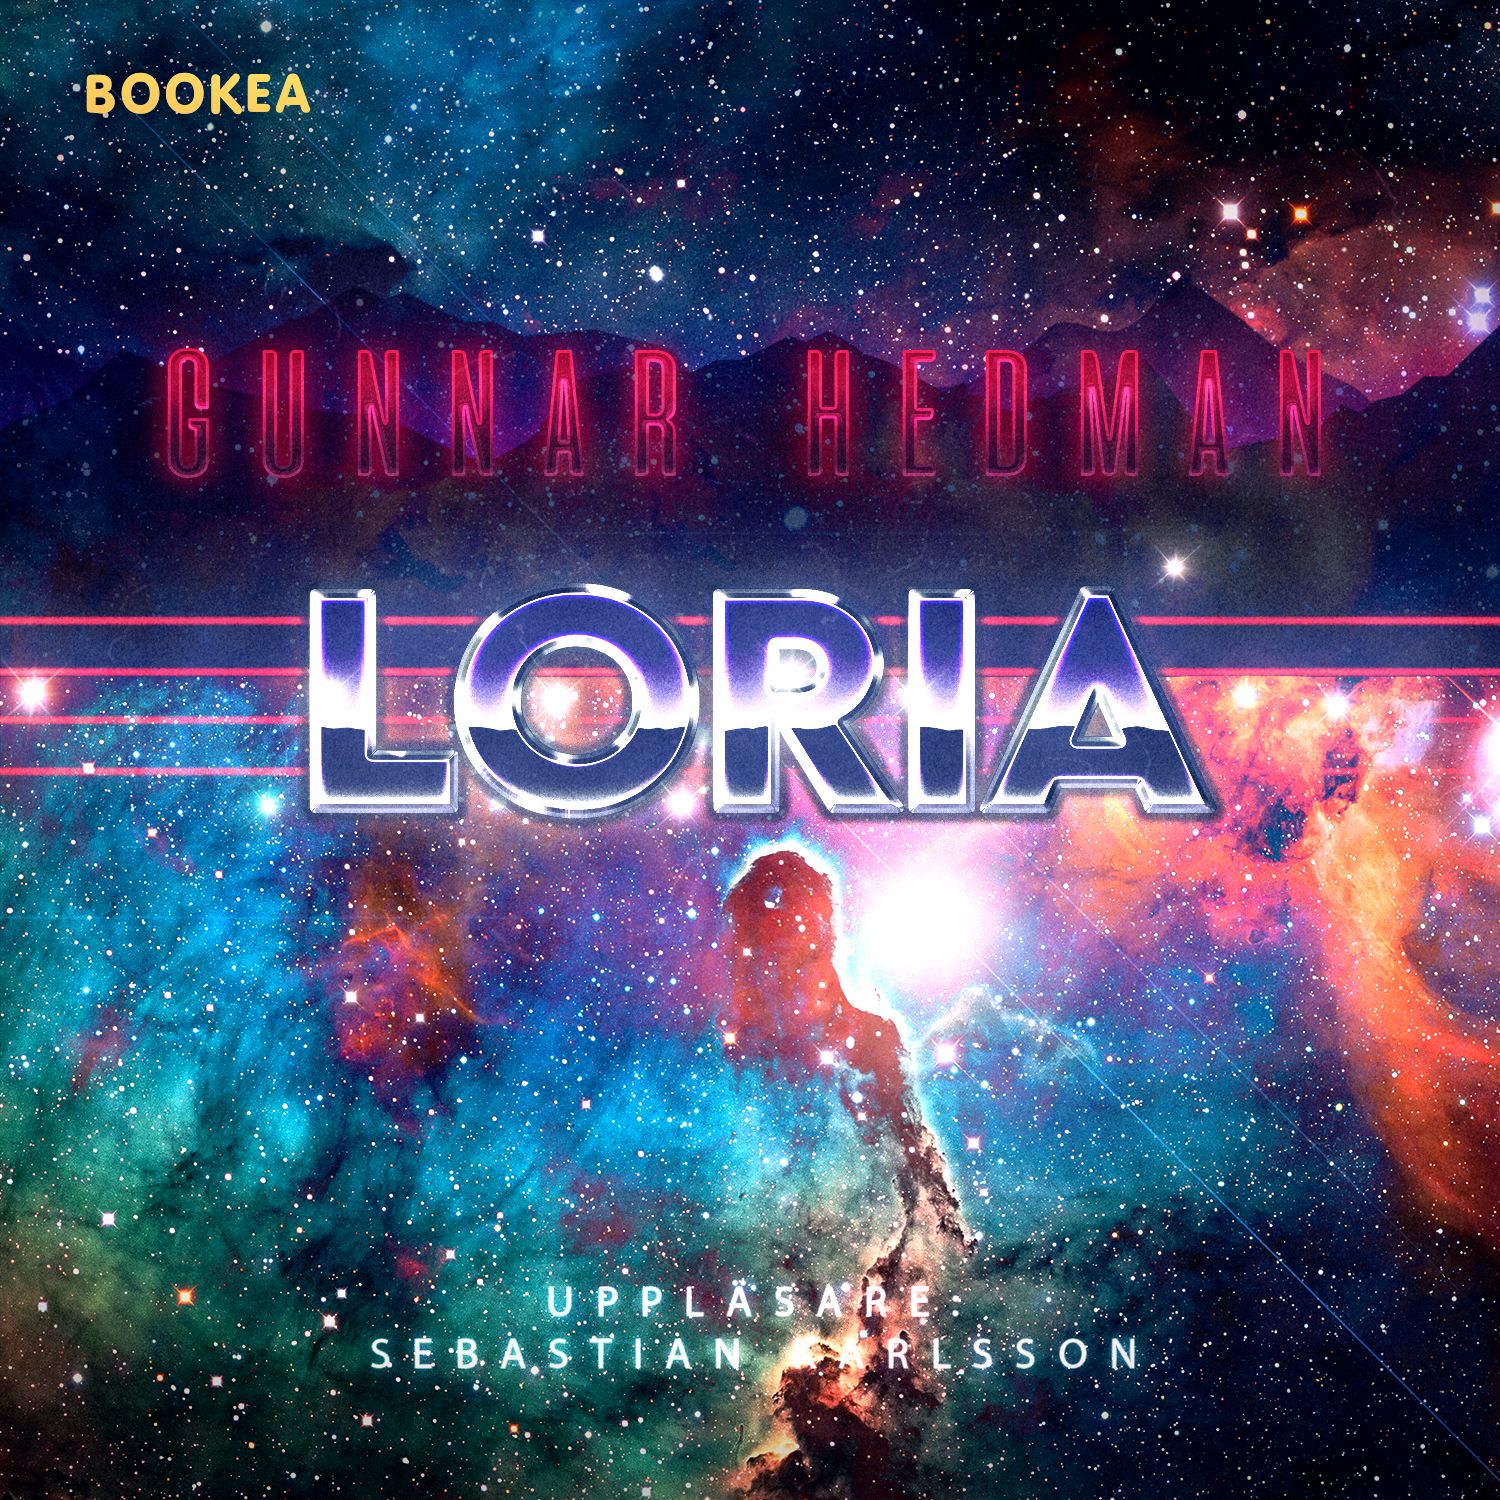 Loria, lydbog af Gunnar Hedman